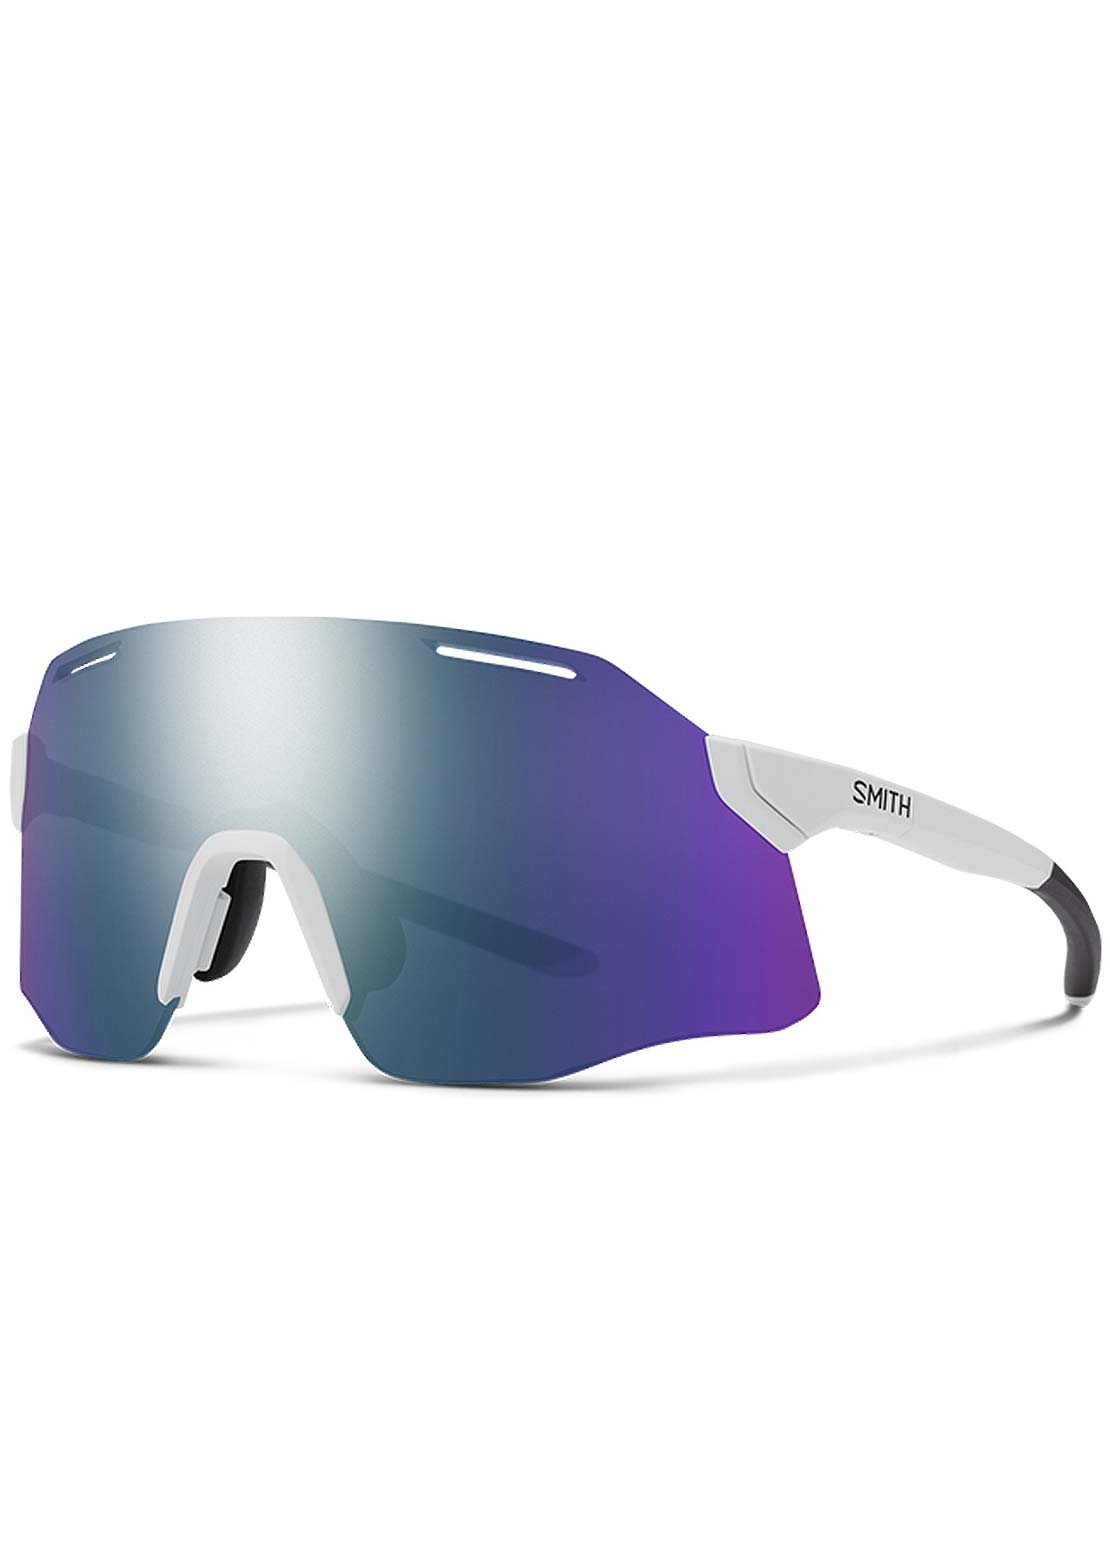 https://www.prfo.com/cdn/shop/files/smith-vert-mountain-bike-sunglasses-white-chromapop-violet-mirror-details_1200x.jpg?v=1687970865